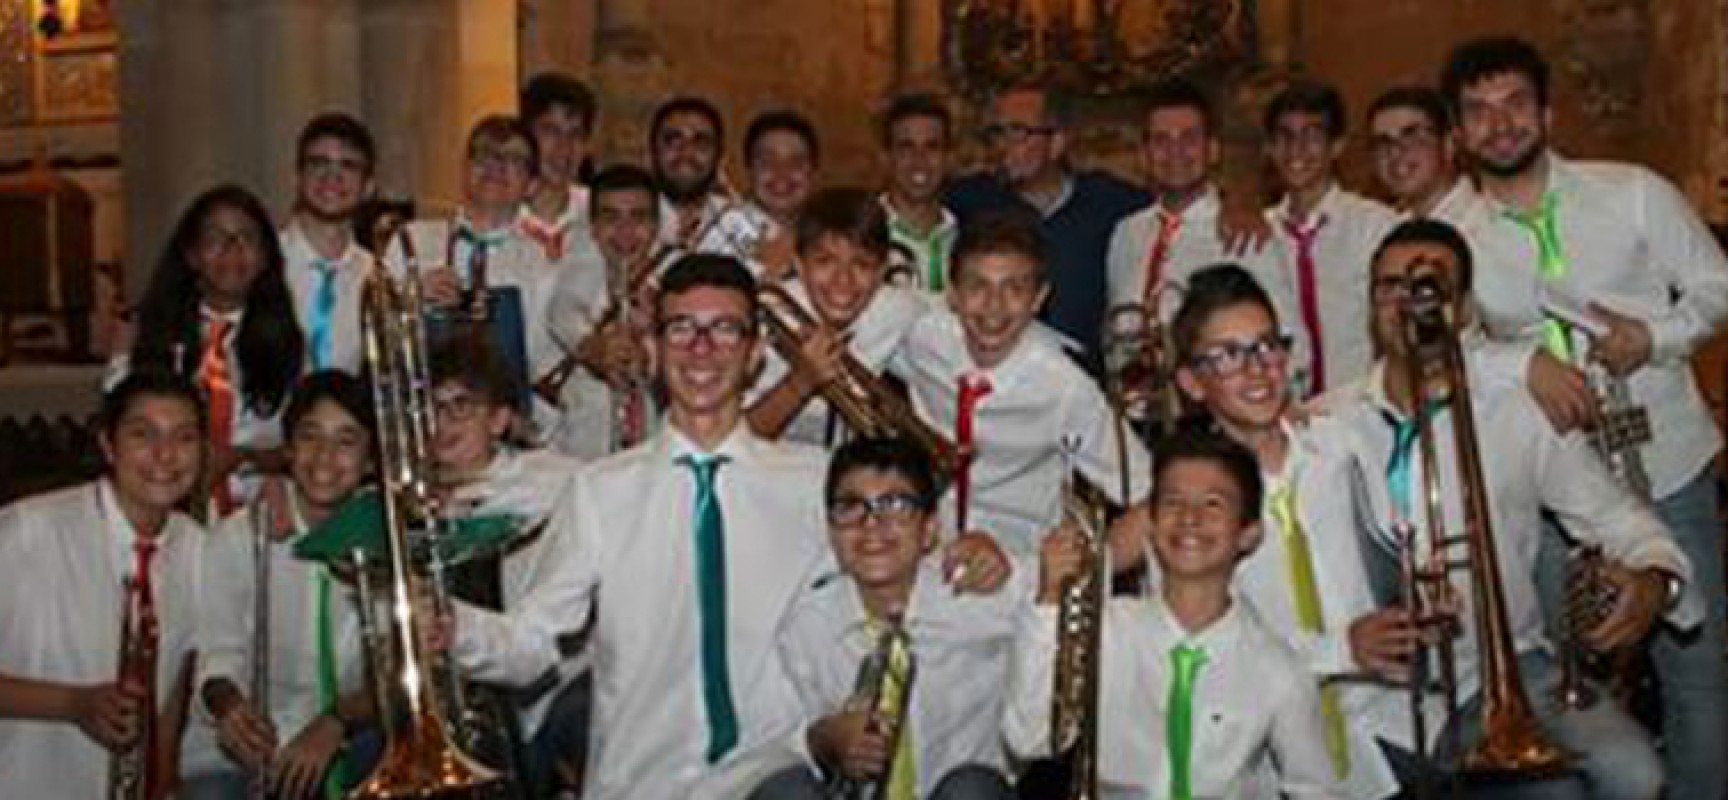 Musica e spettacolo al Garibaldi con il concerto de Il Cenacolo – Brass ensemble